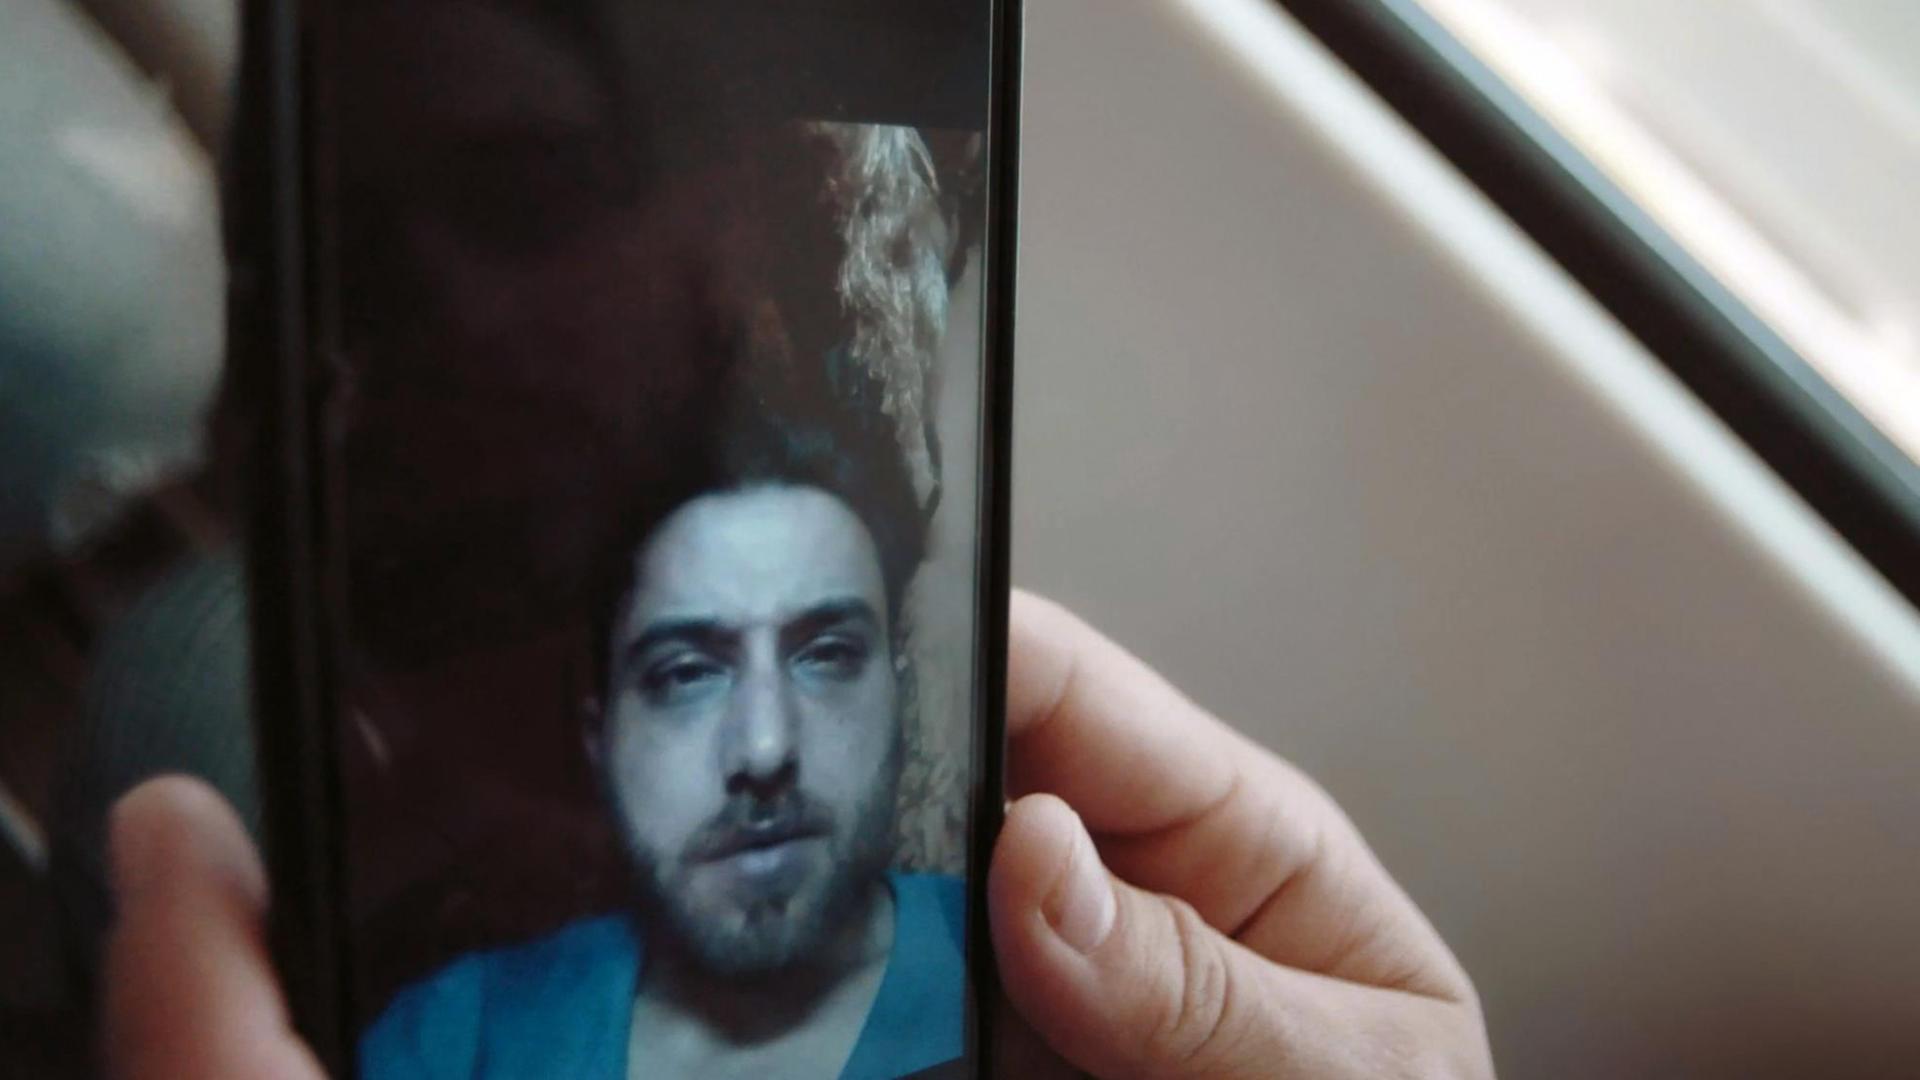 Szene aus "Nachrichten aus Syrien – The war on my phone": Ein syrischer Häftling erzählt einem geflohenen Bekannten in Deutschland mit Hilfe eines eingeschmuggelten Smartphones aus dem Gefängnis über seine Lebensumstände